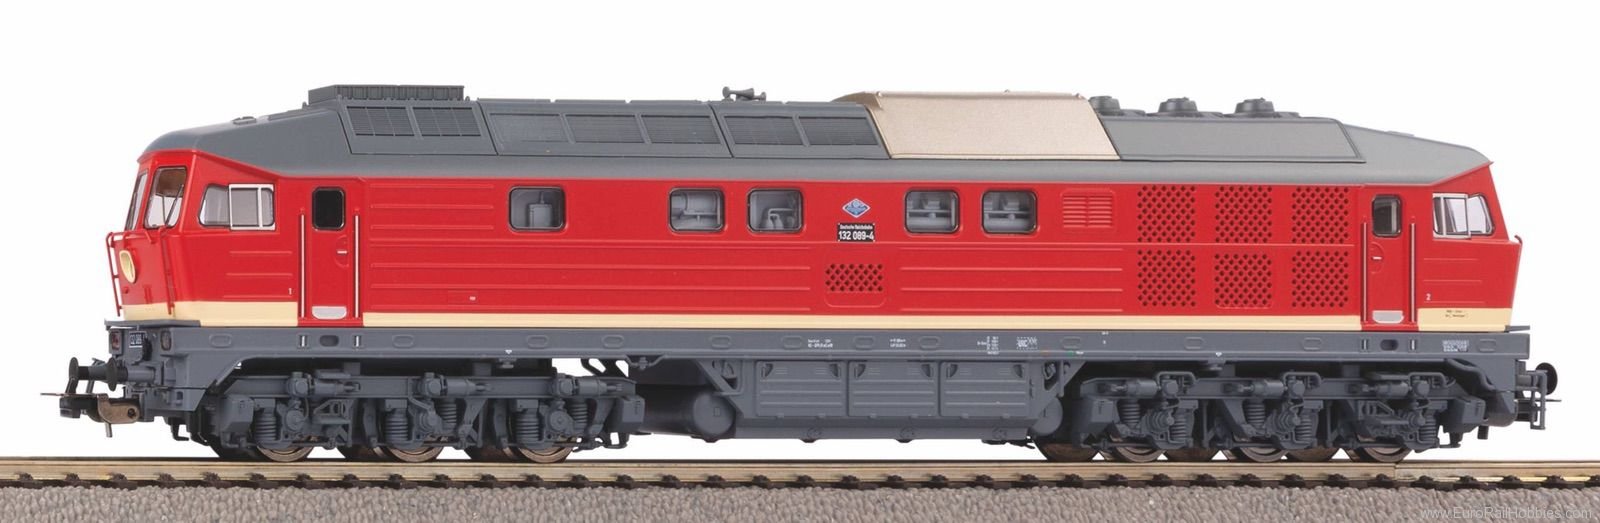 Piko 52912 Diesel Locomotive 132 DR IV (Marklin AC Digit